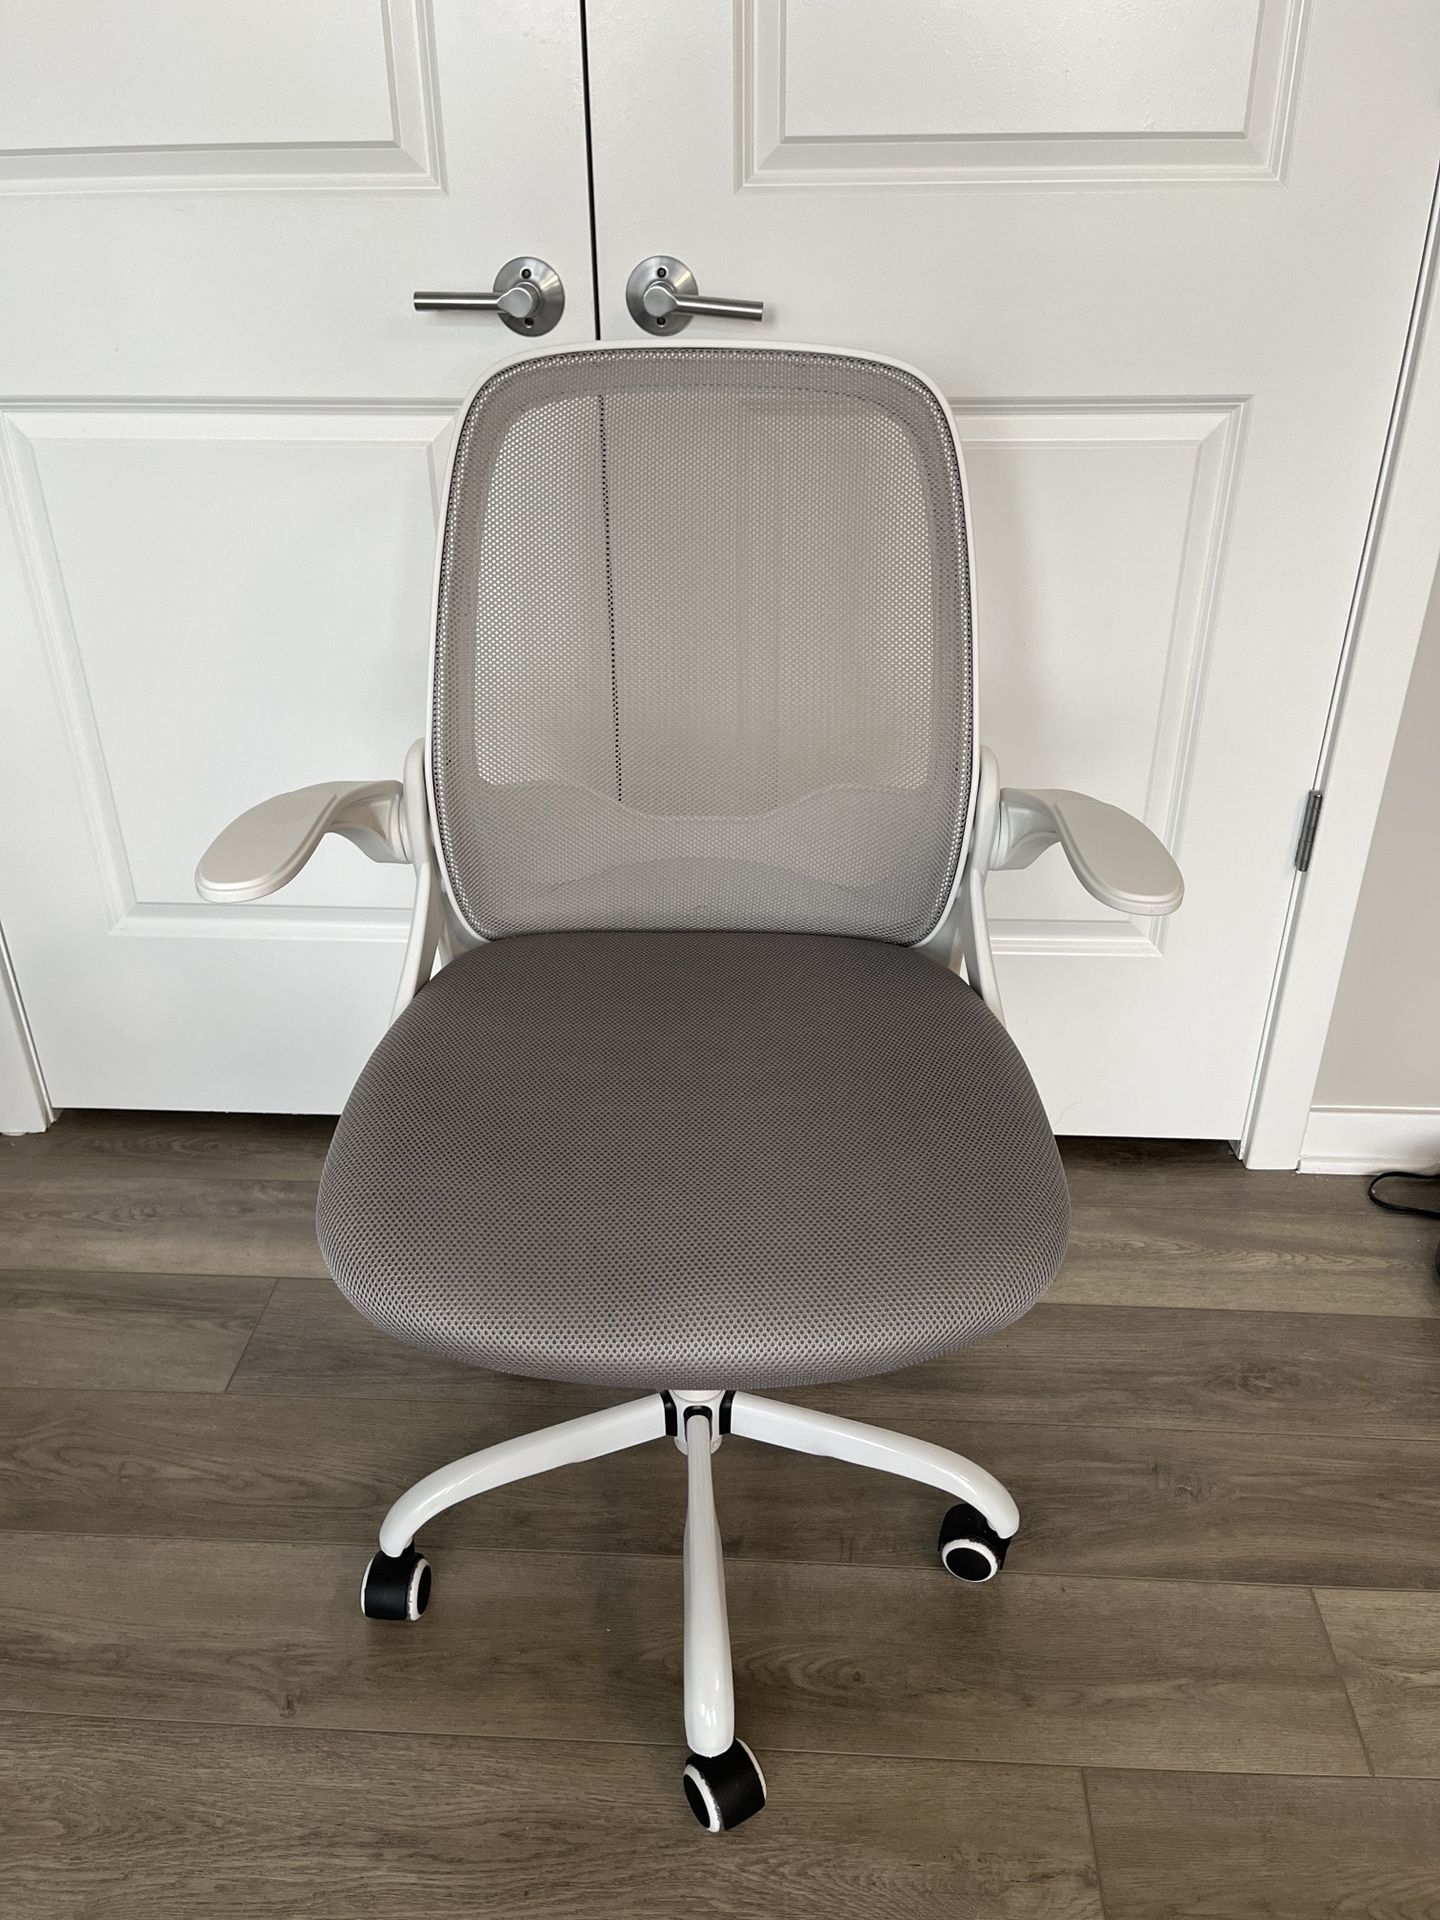 Ergonomic Desk Chair, Flip-Up Armrests And Adjustable Height